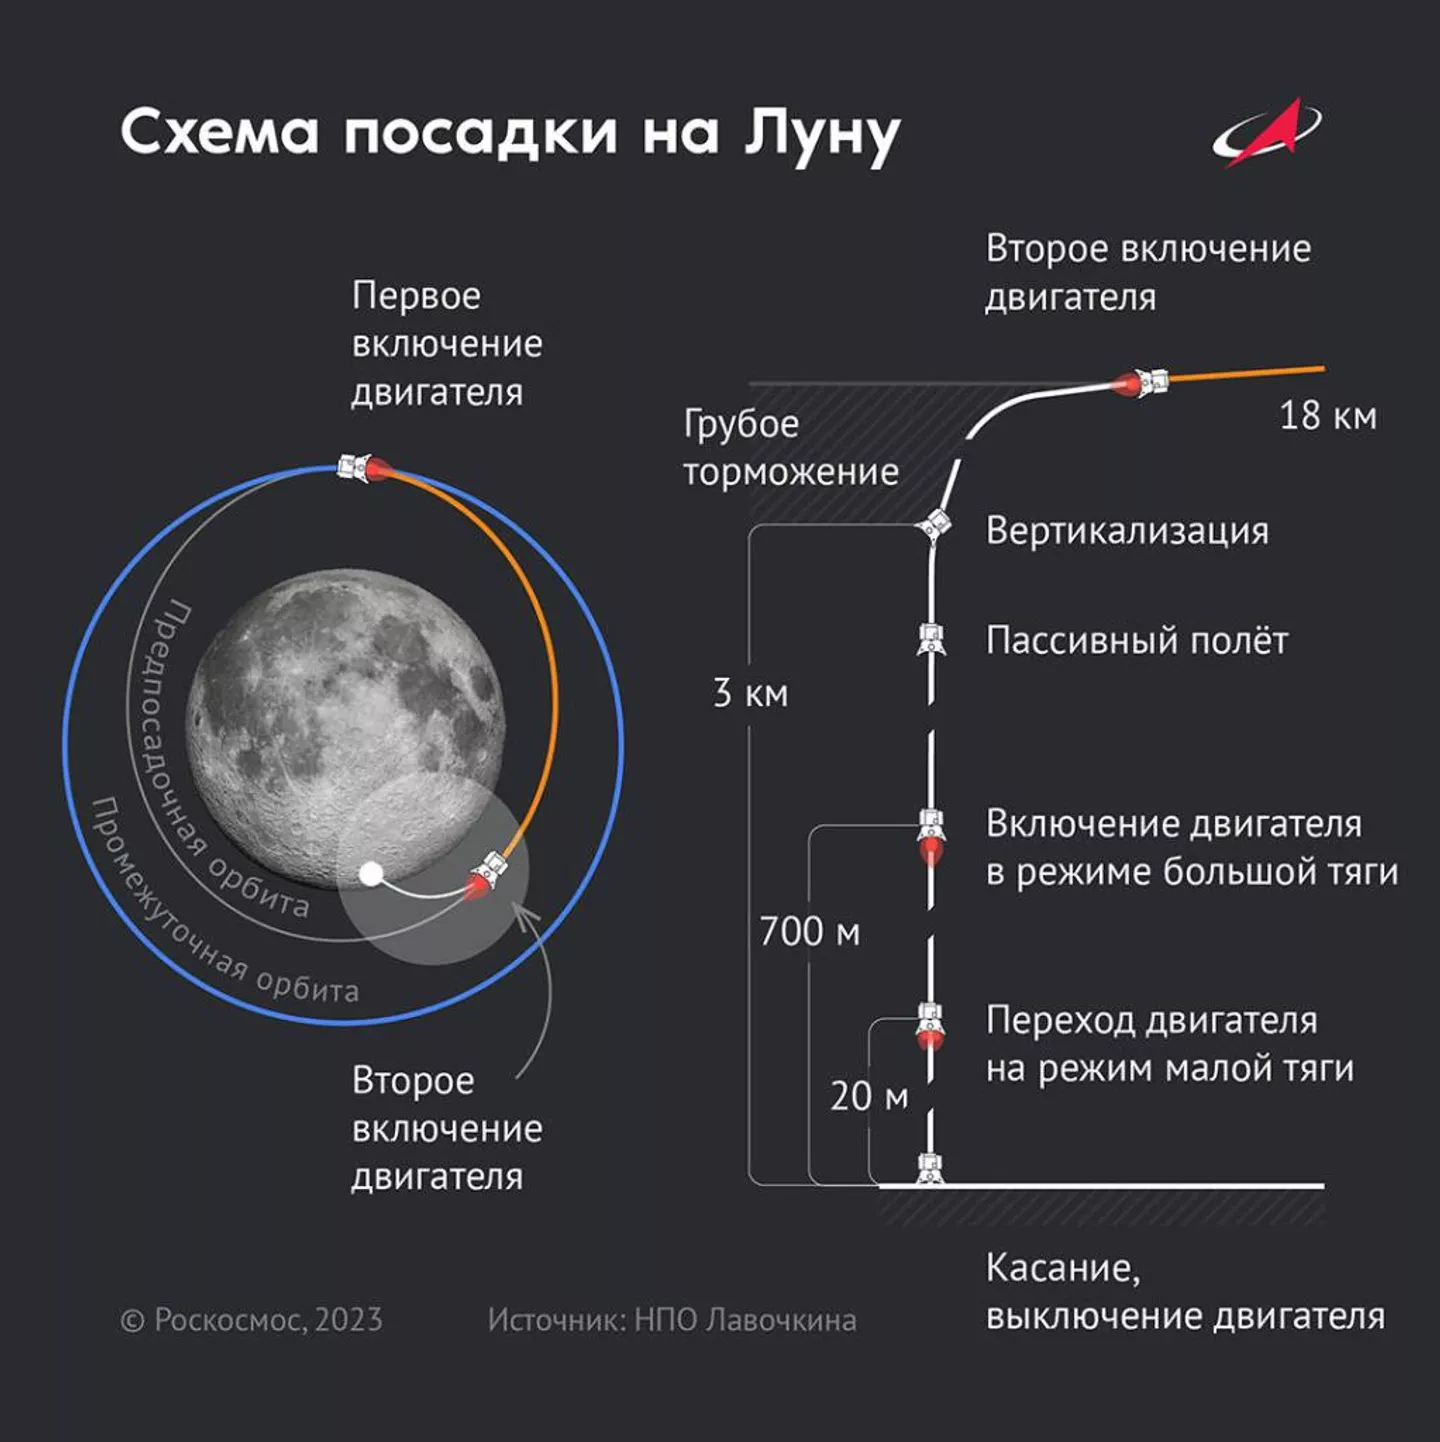 Схема посадки автоматической станции Луна-25